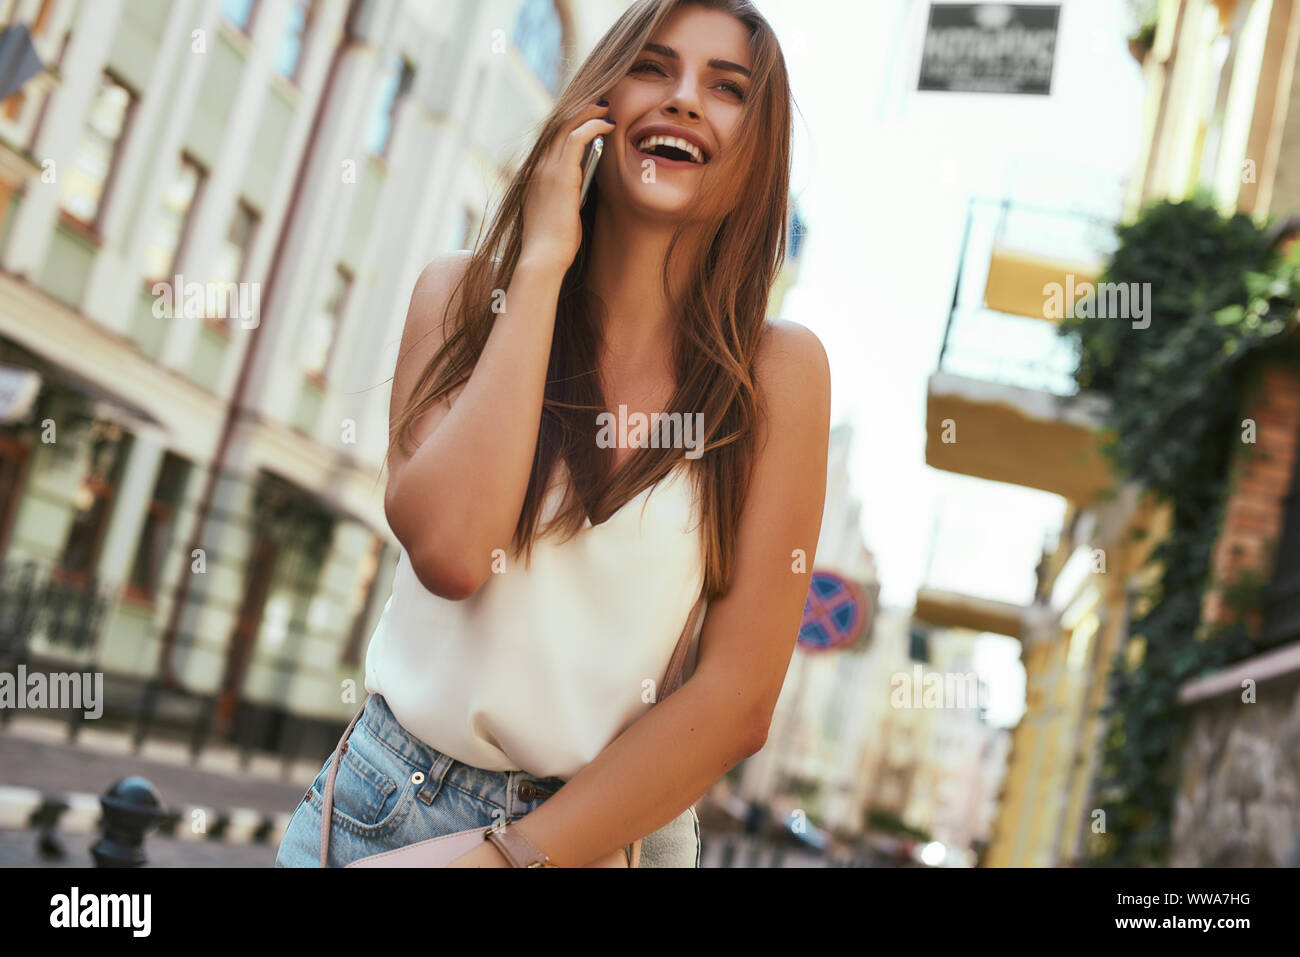 Porträt der jungen stilvolle Frau lächelnd beim Gehen auf die Straße, mit niedlichen trendy Outfit. Sie spricht am Telefon mit einer Freundin. Sommer lifestyle Konzept. Horizontale Schuß Stockfoto